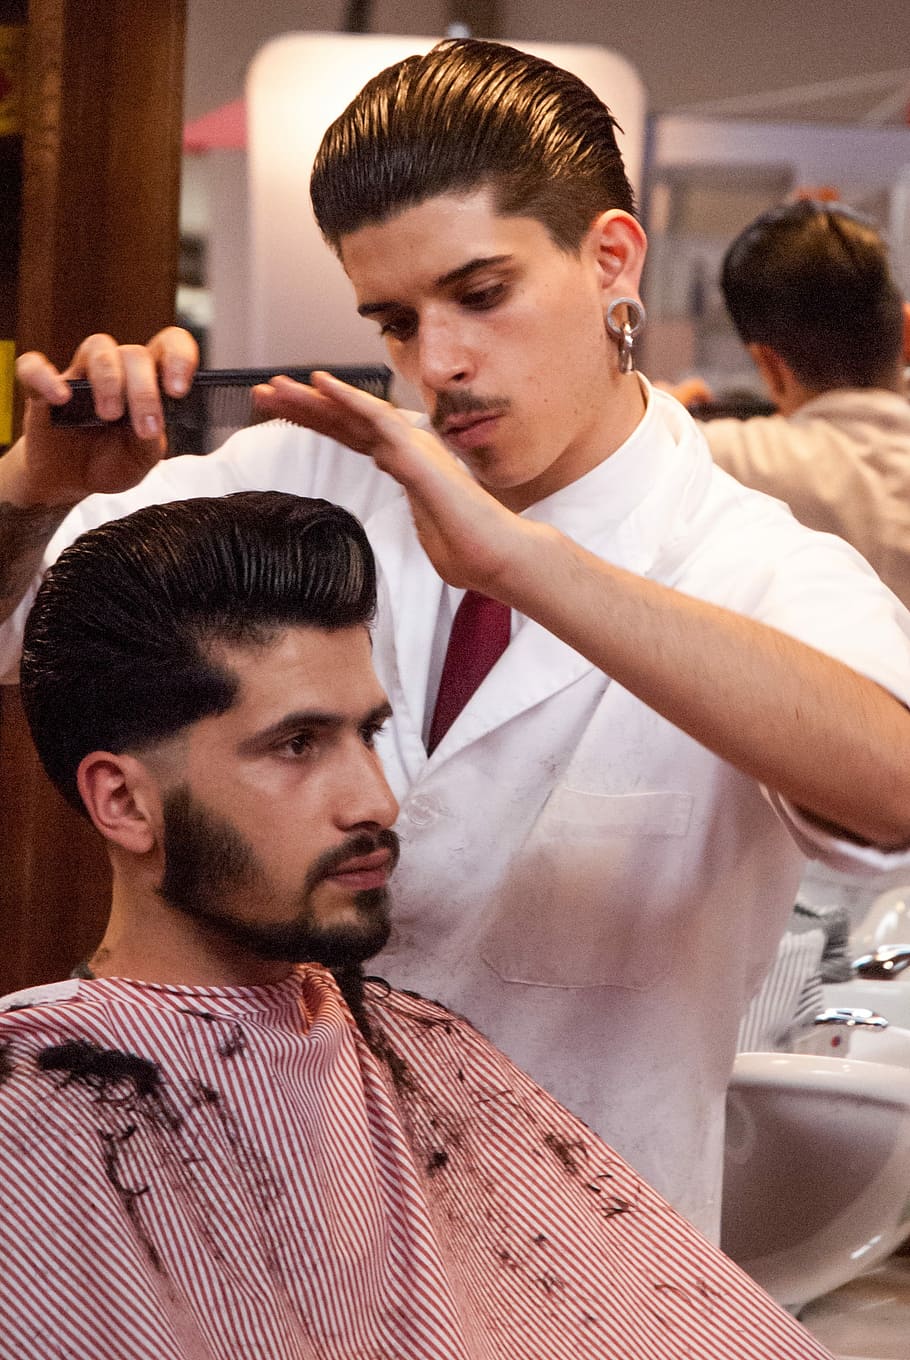 man holding black hair comb on man's hair, Hairdresser, Model